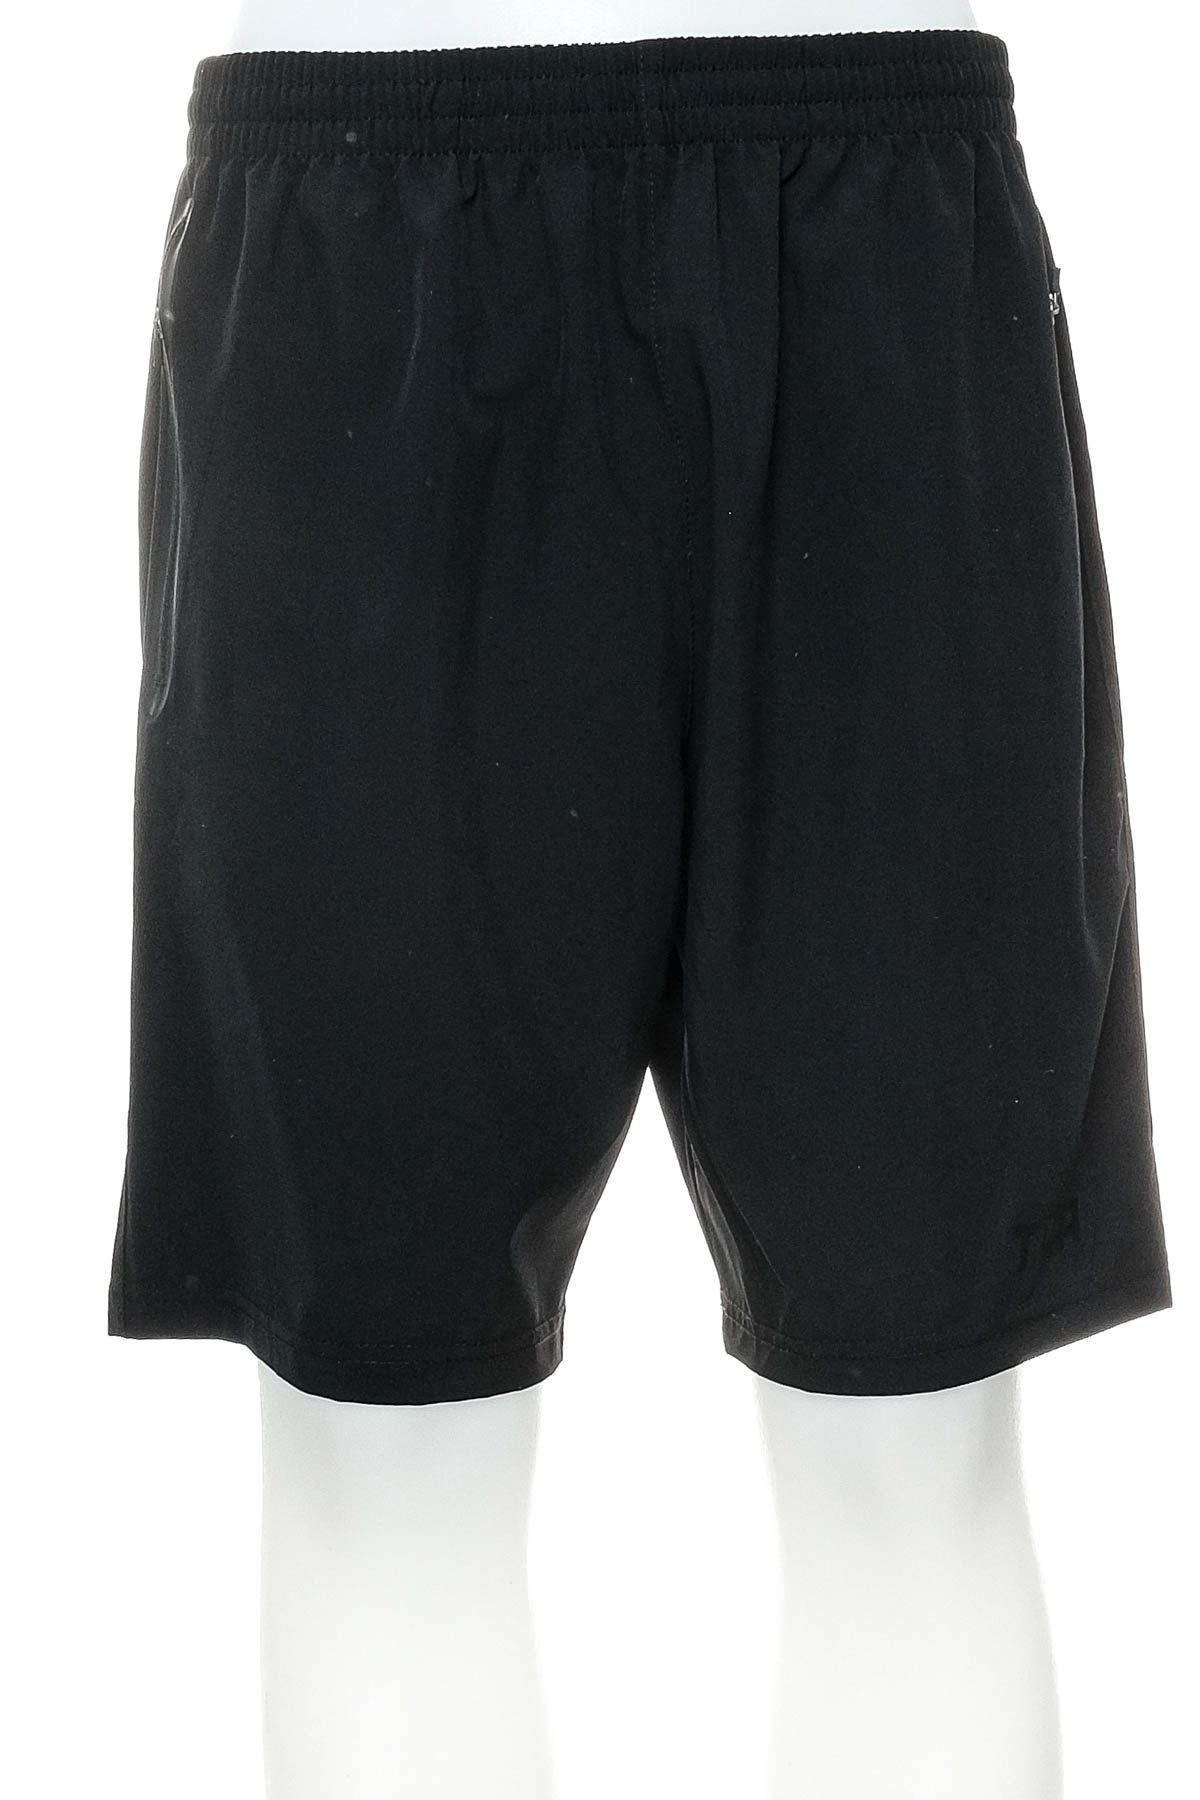 Men's shorts - TCA - 0